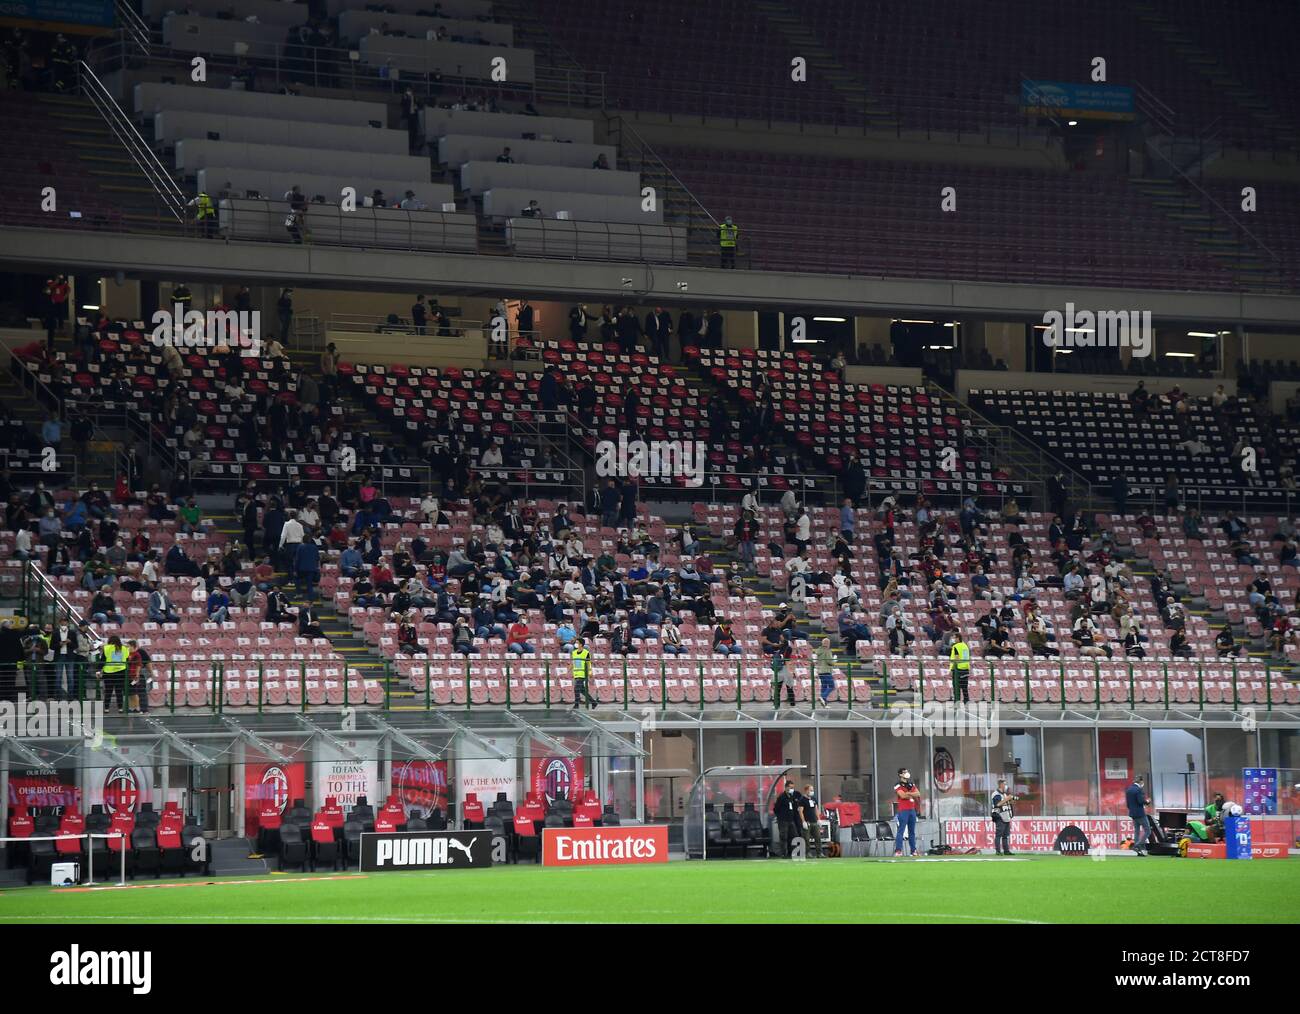 Milan, Italie. 21 septembre 2020. Les supporters attendent le match avant une série UN match de football entre l'AC Milan et Bologne à Milan, Italie, 21 septembre 2020. Crédit: Alberto Lingria/Xinhua/Alay Live News Banque D'Images